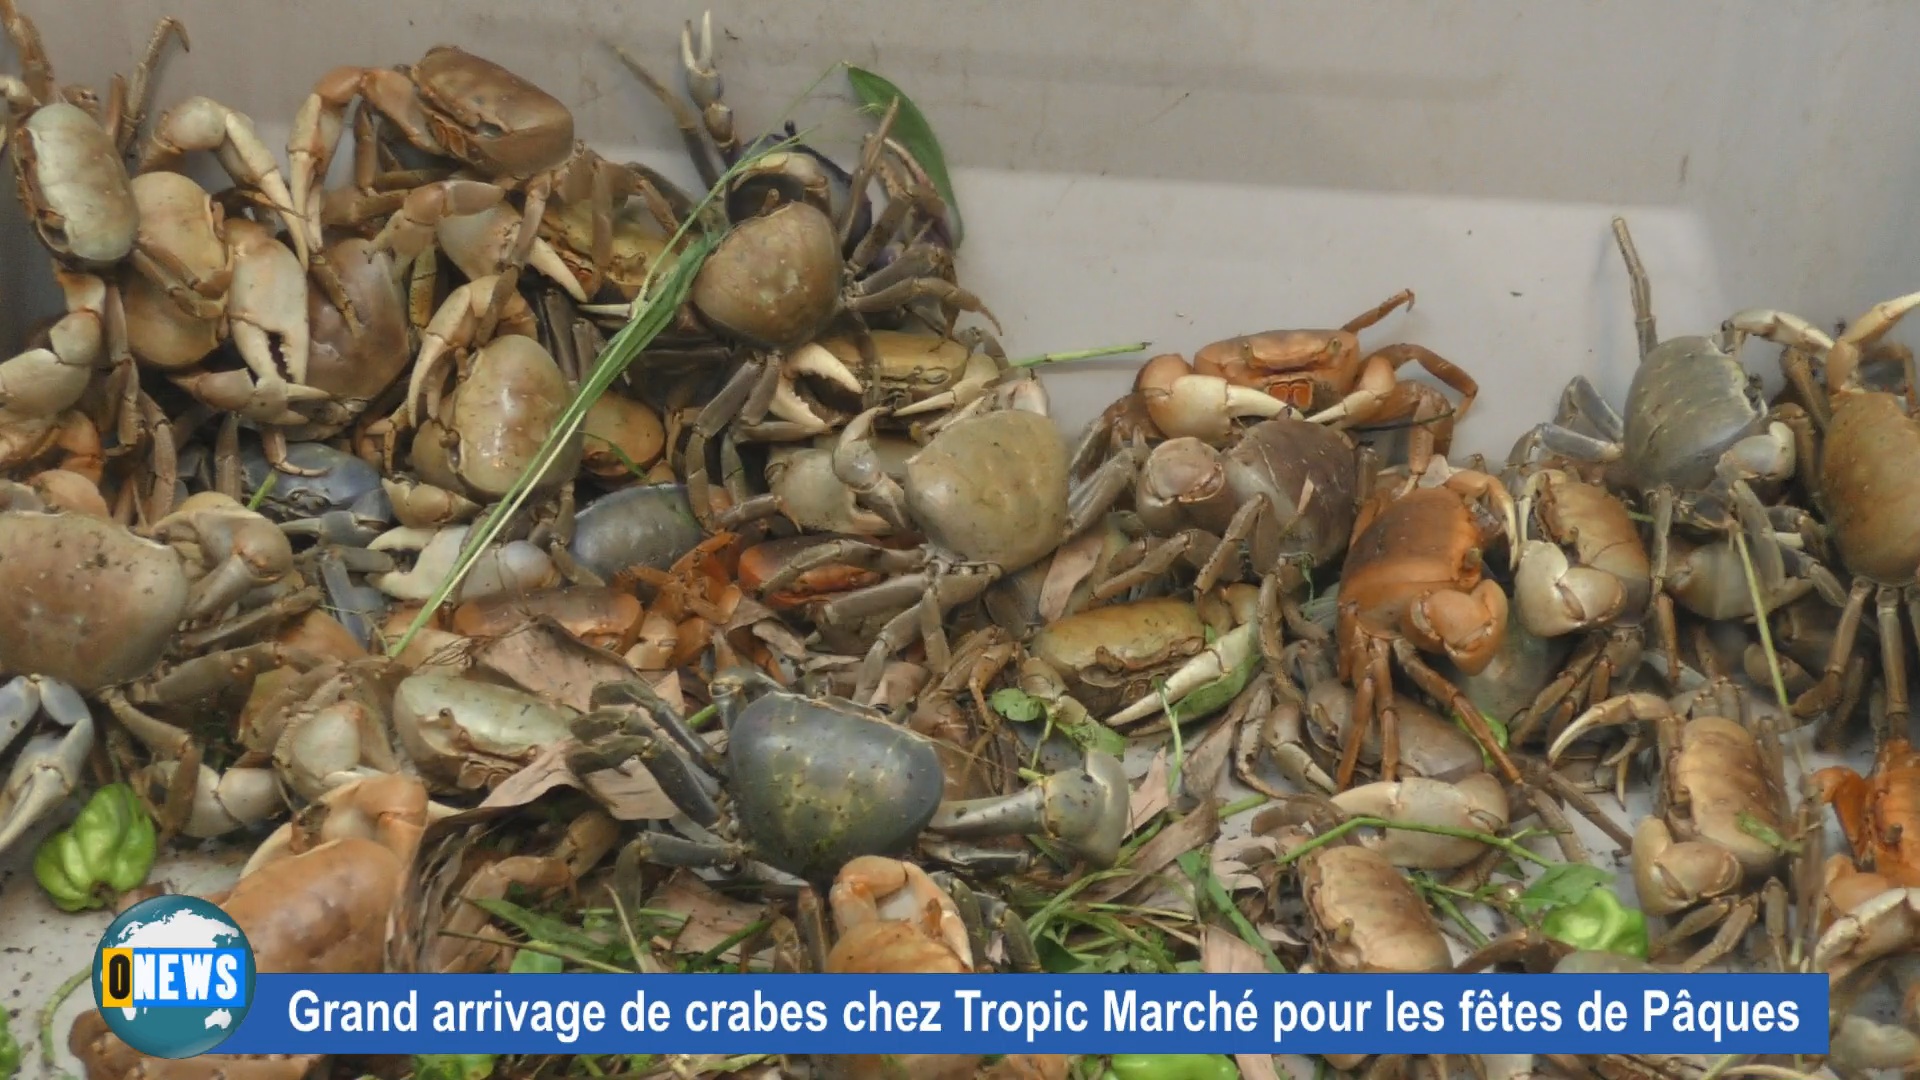 Les crabes sont arrivés à Paris chez Tropic Marché pour les fêtes de Pâques